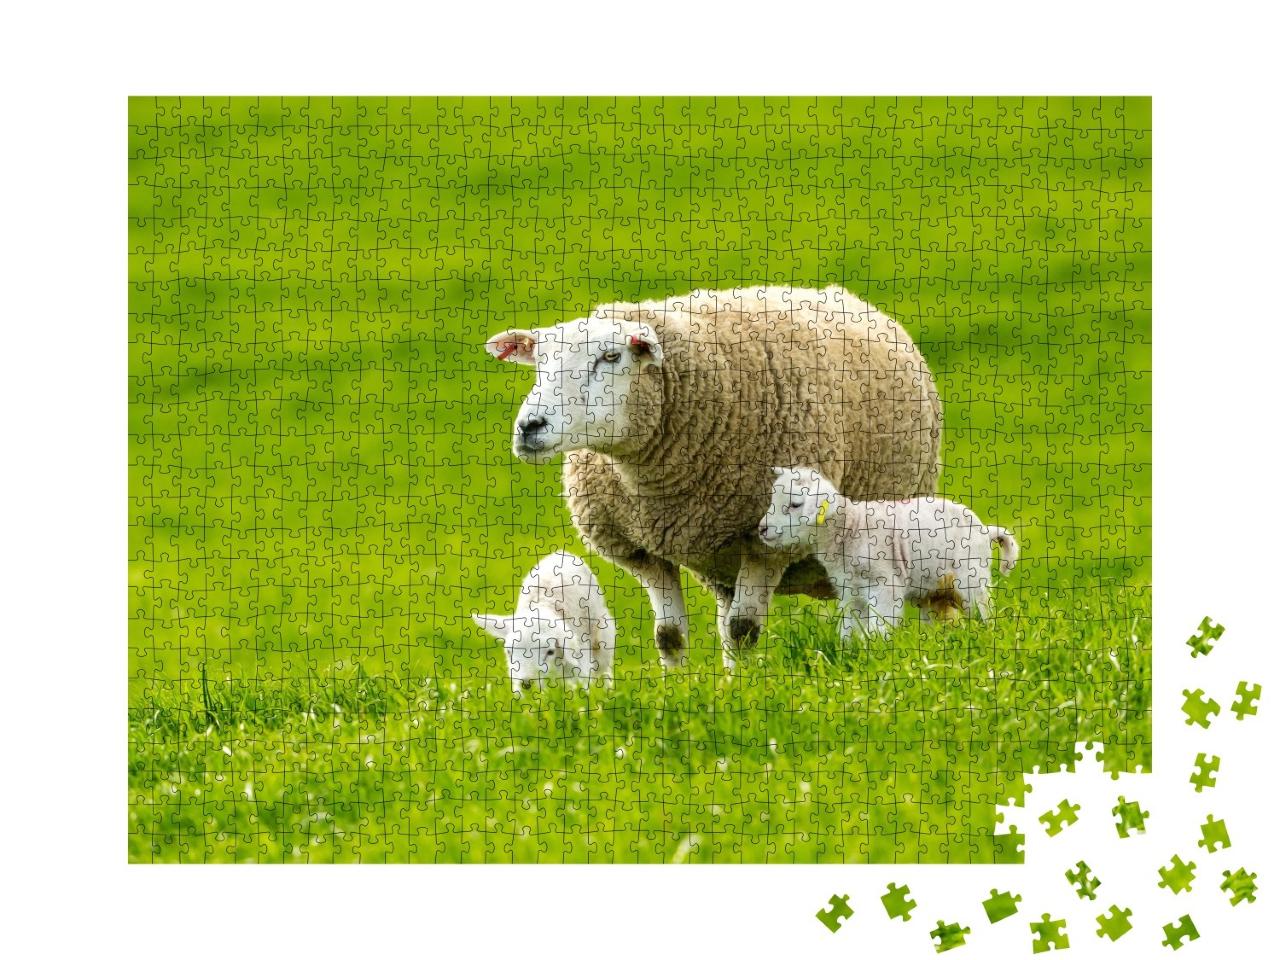 Puzzle de 1000 pièces « Une brebis et ses agneaux dans une verte prairie au printemps »